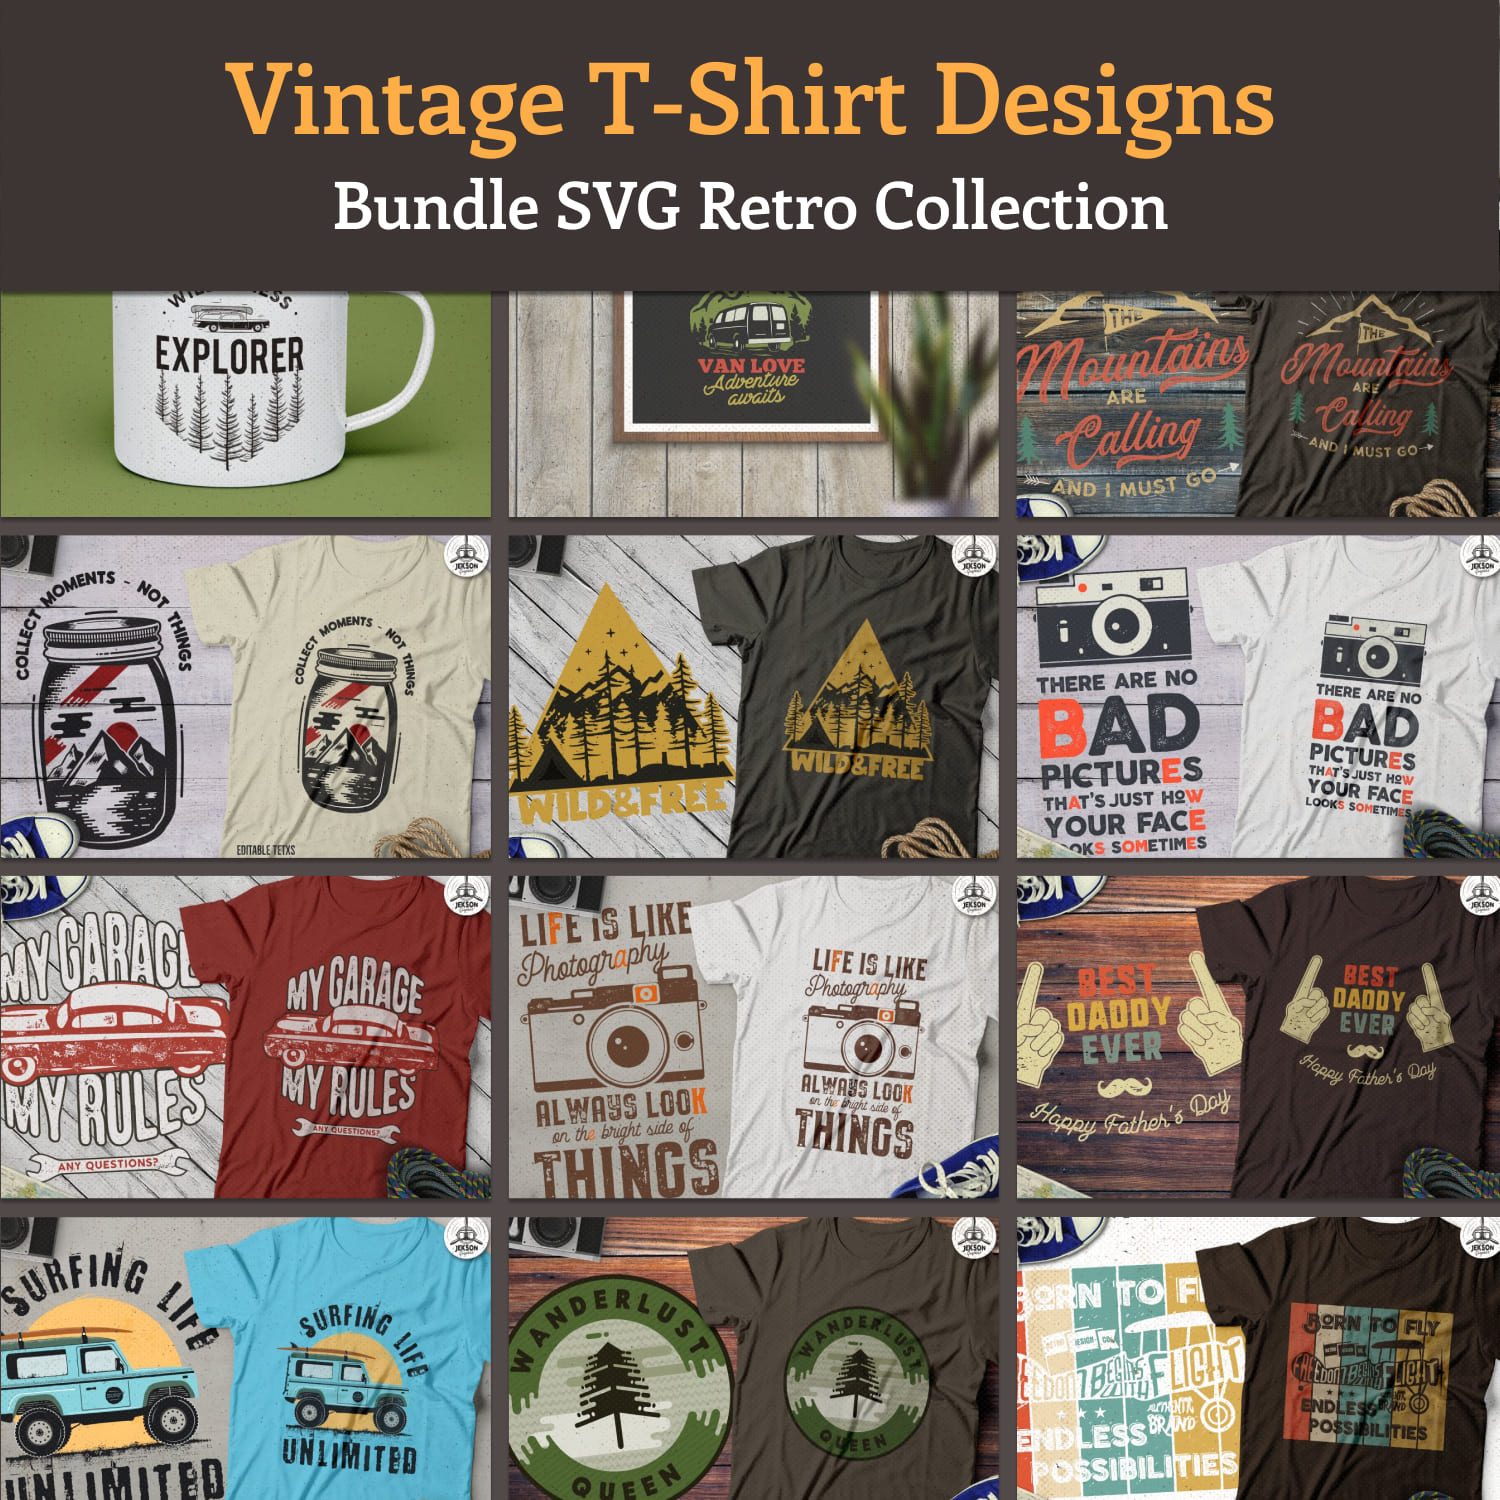 Vintage T-Shirt Designs Bundle SVG Retro Collection. Part 2.